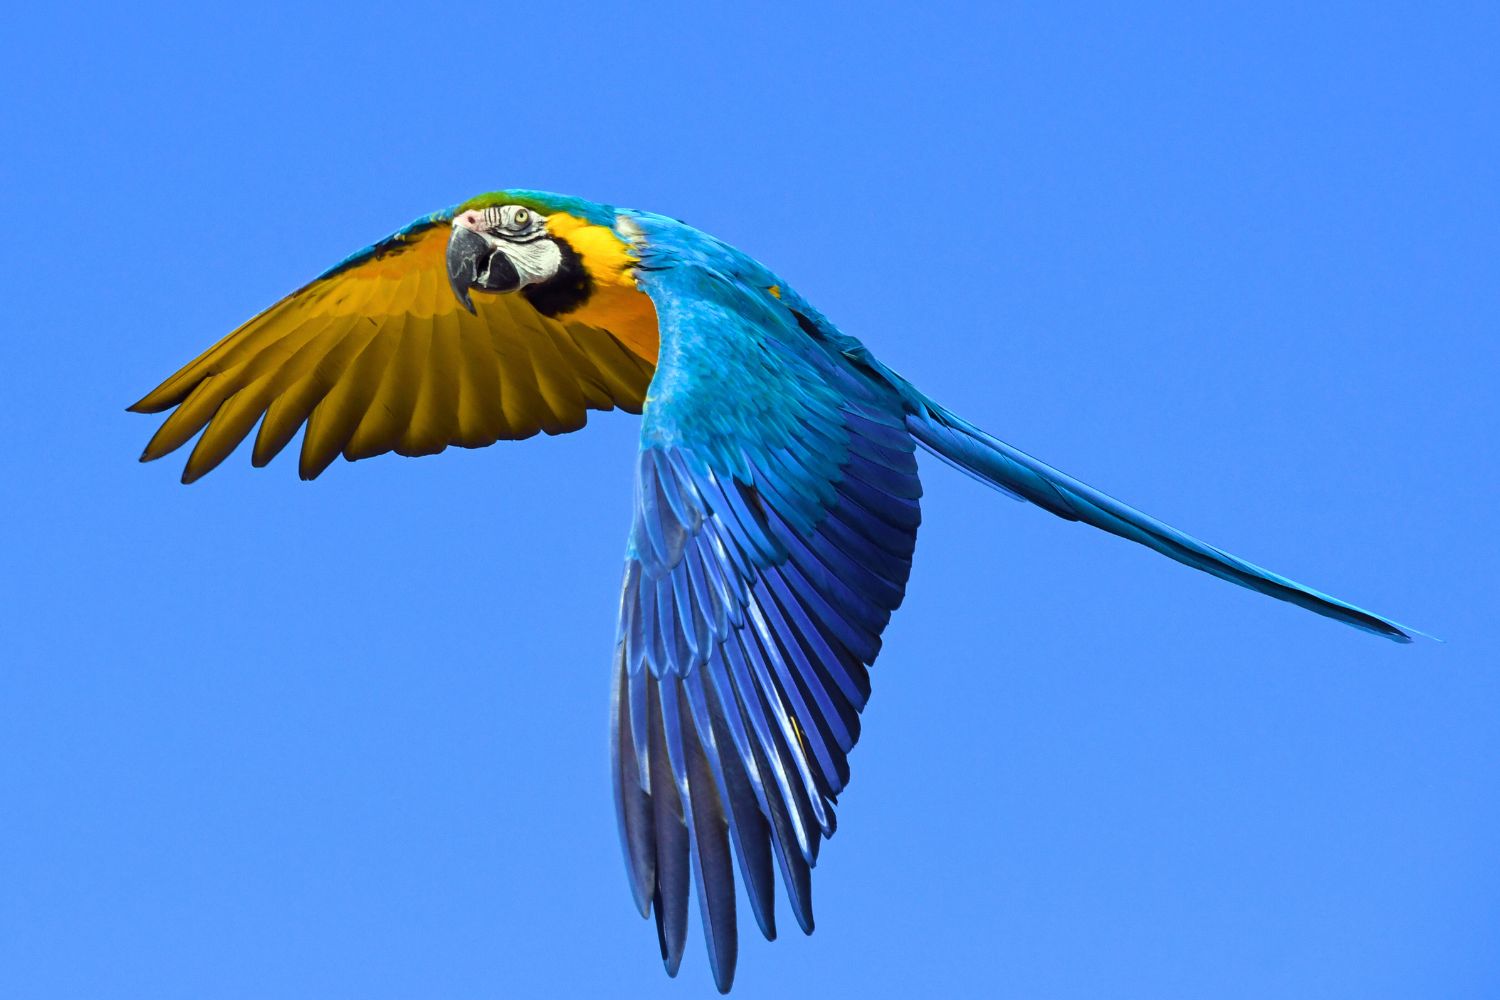 2. Aras sind die größte Papageienart